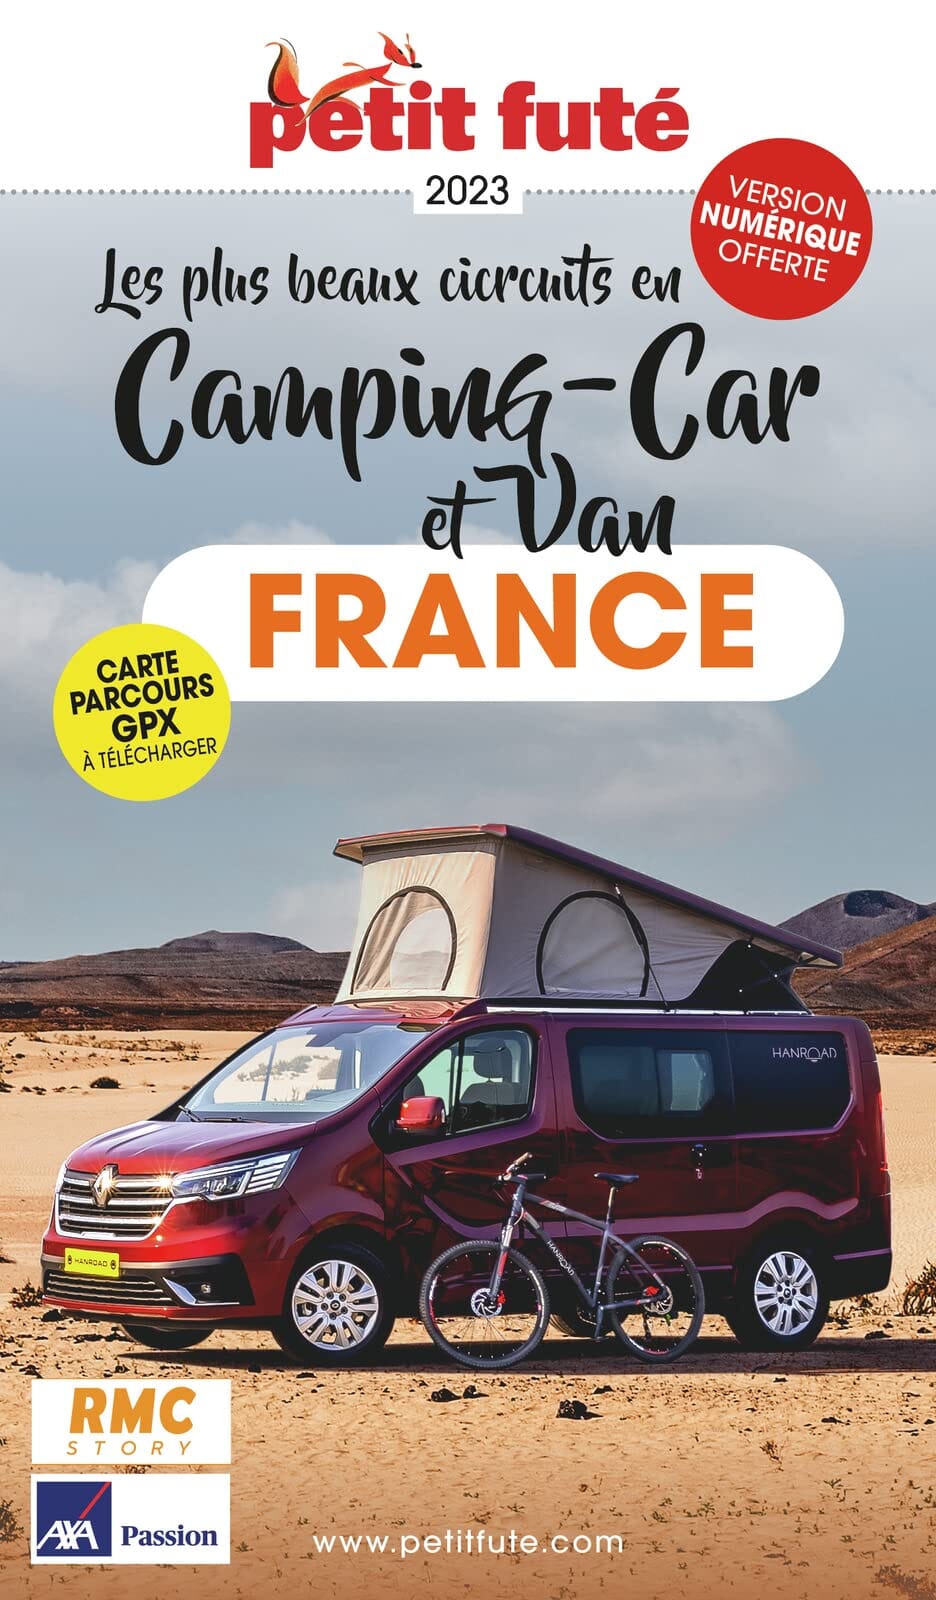 Guide de voyage - Les plus beaux circuits en Camping-car et van en France 2023 | Petit Futé guide de voyage Petit Futé 